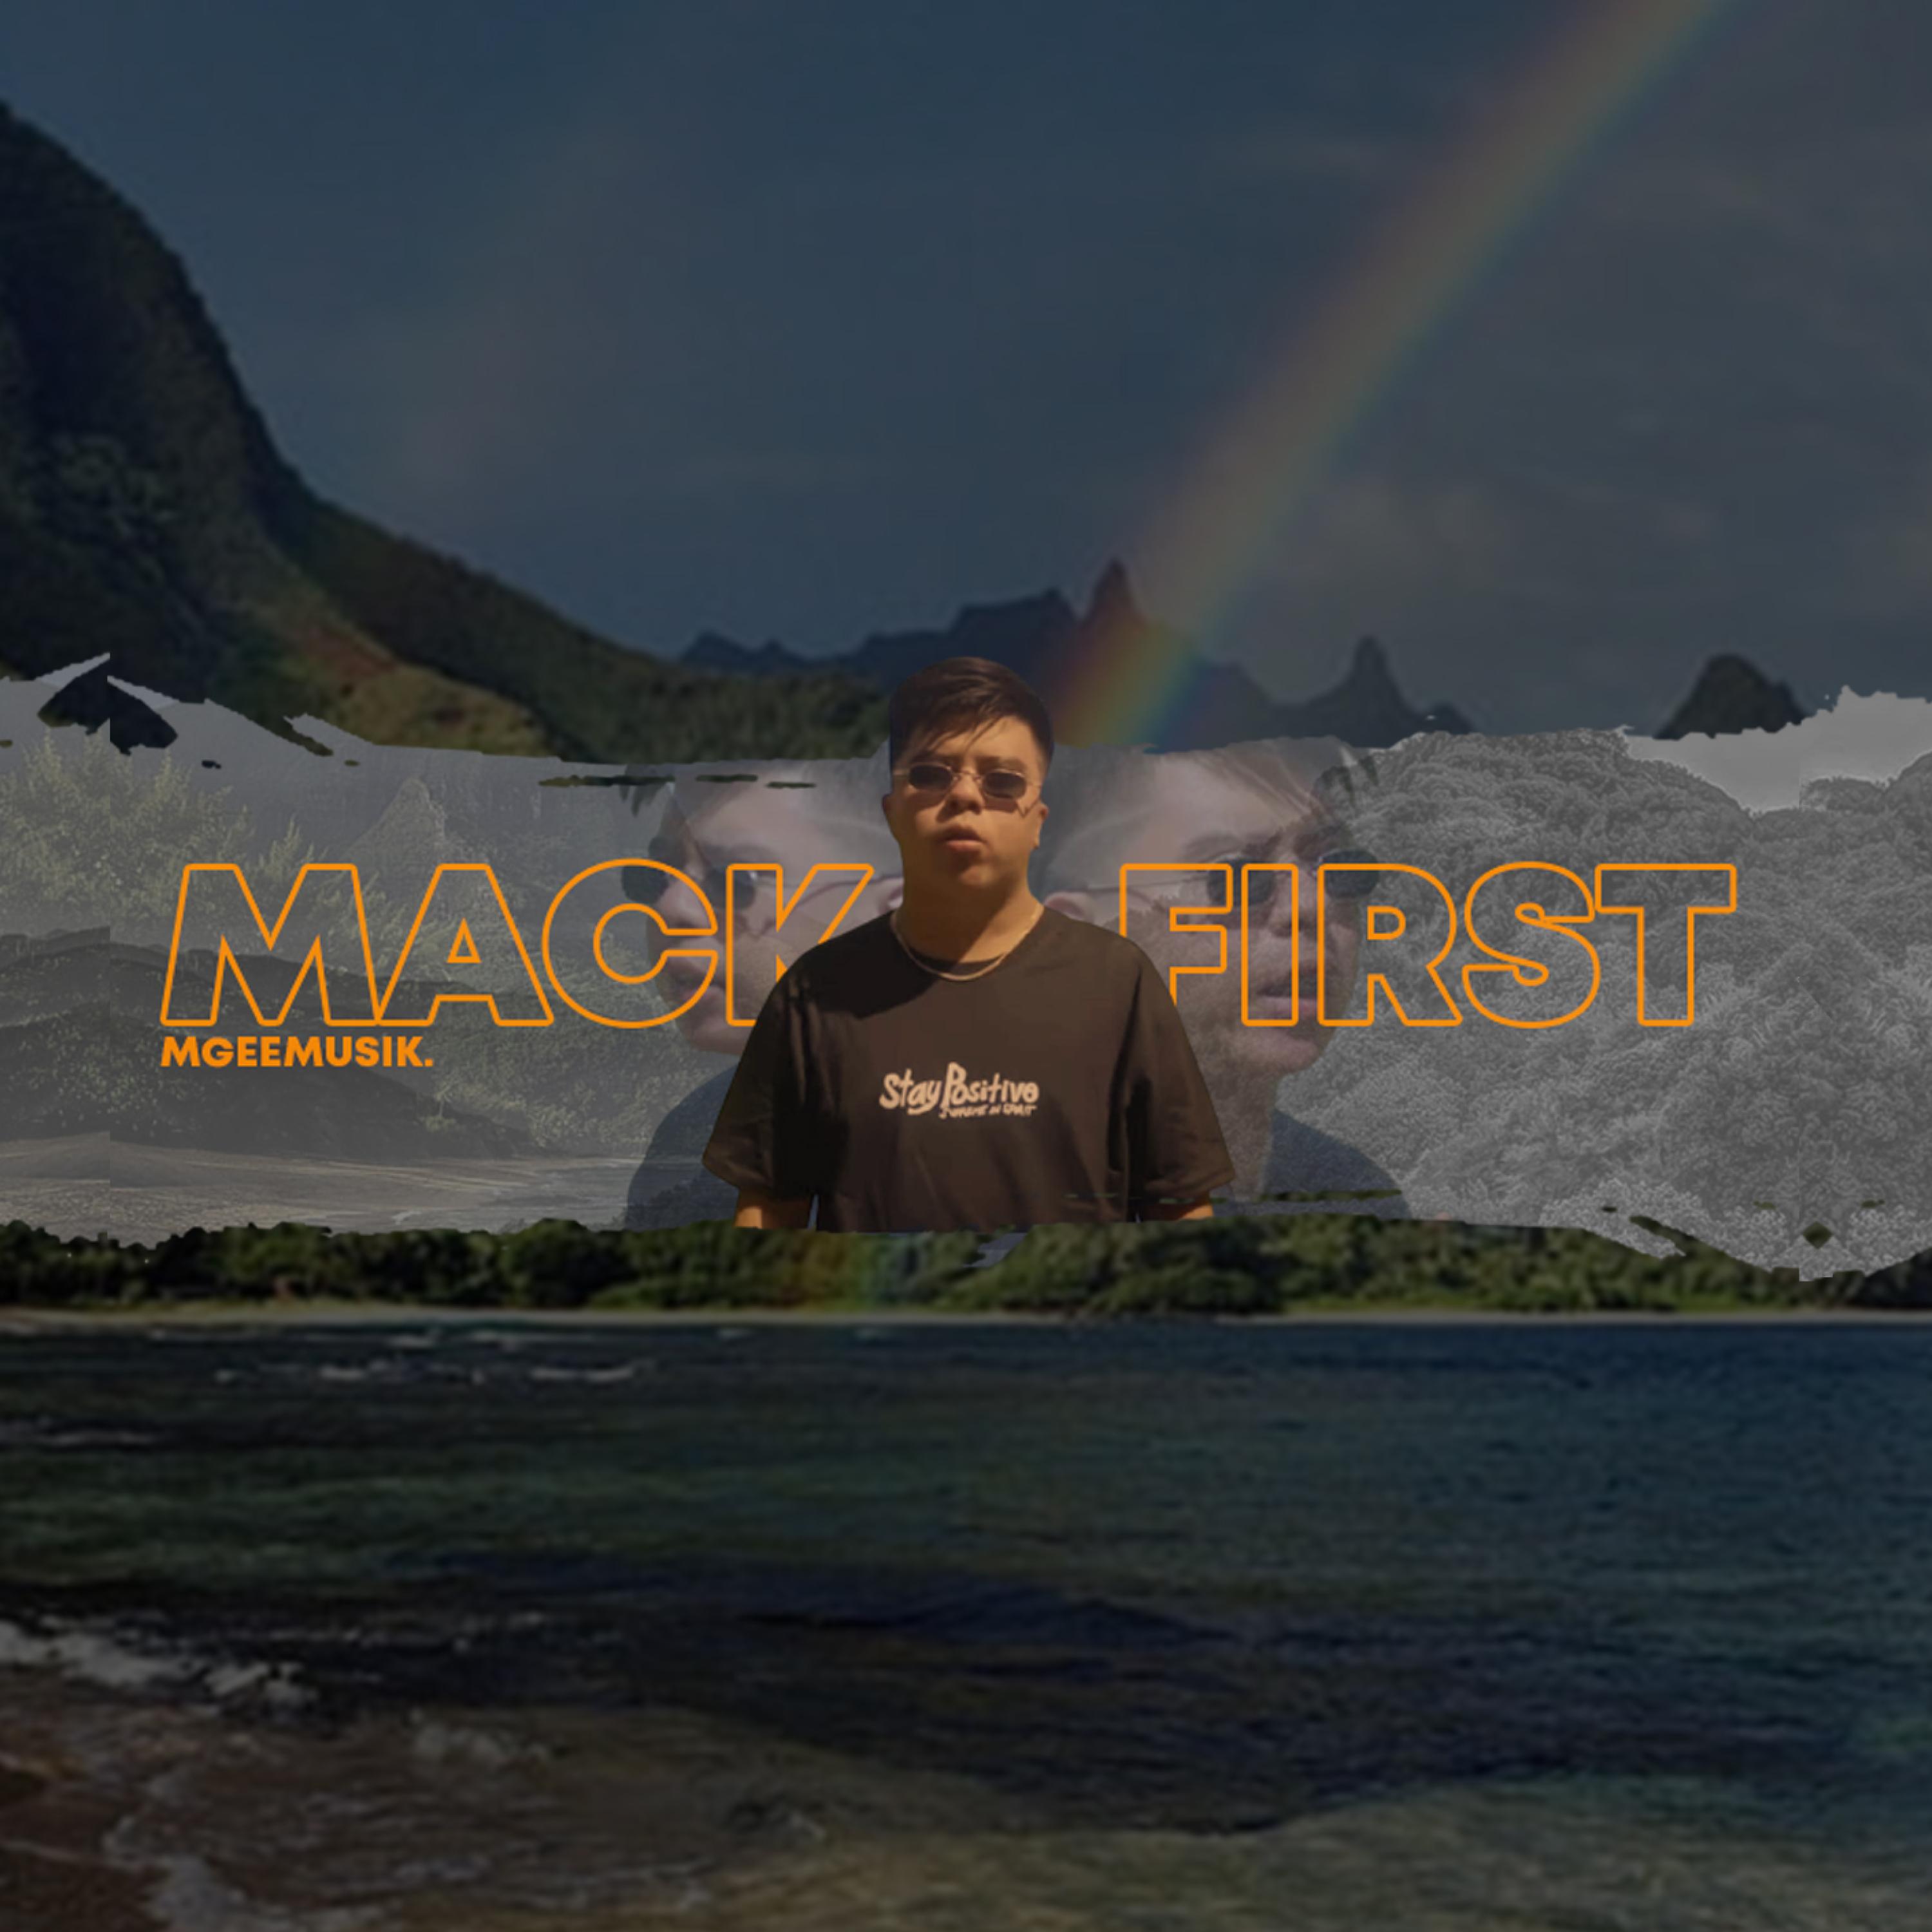 Mackfirst - Mackfirst (Isang patawad lang) (feat. Joshua Mari & Zync)